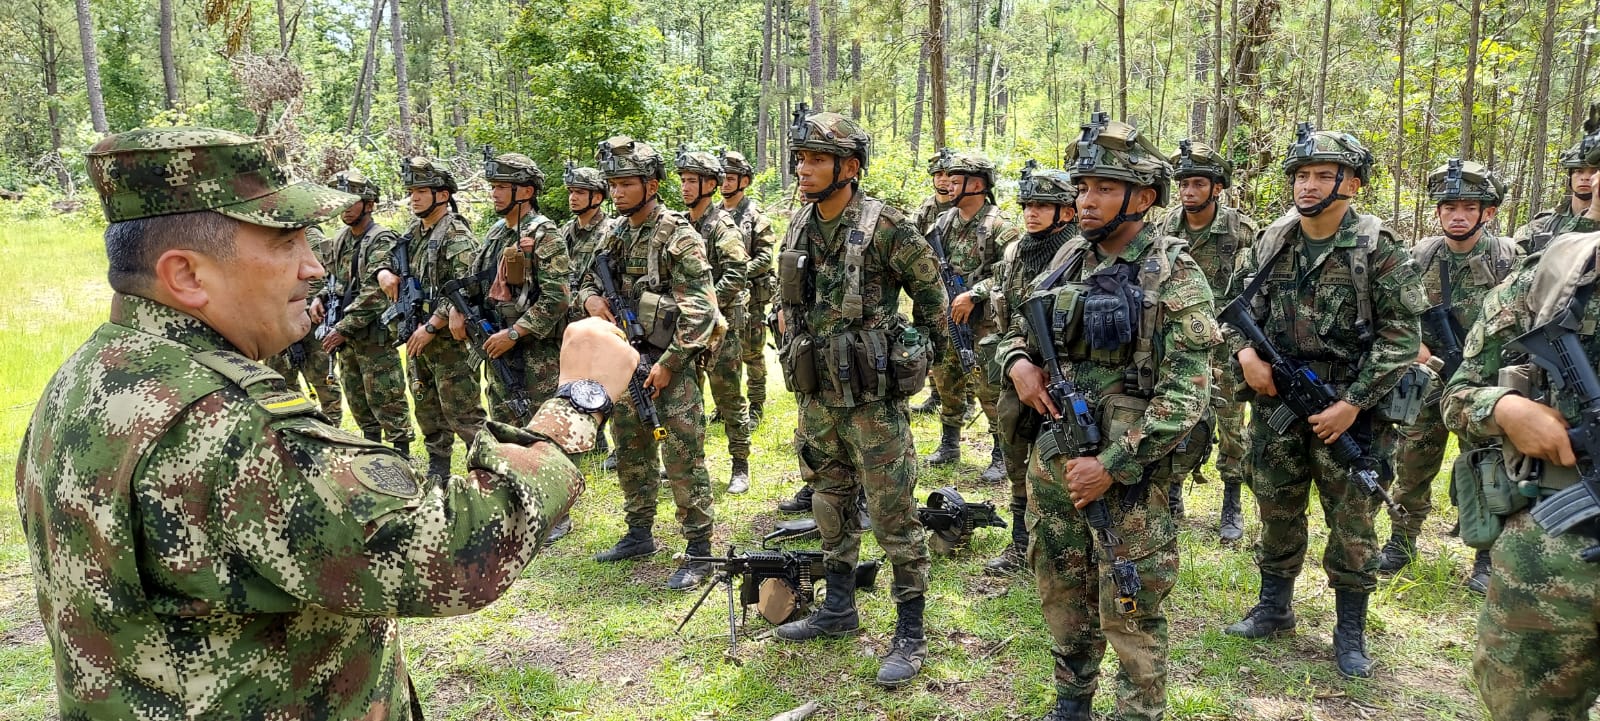 Refuerzo militar en el Valle del Cauca 600 nuevos soldados en acción